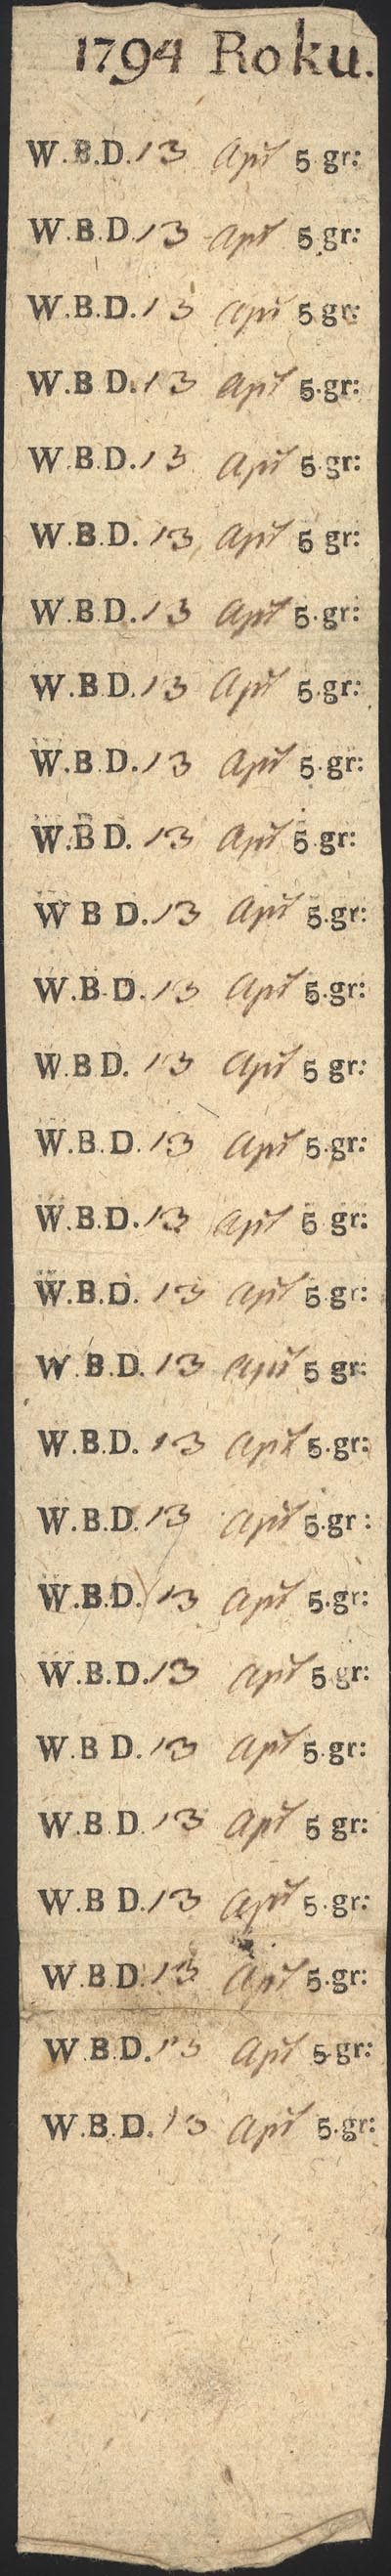 5 groszy z 13.04.1794 roku wydane przez nieznane